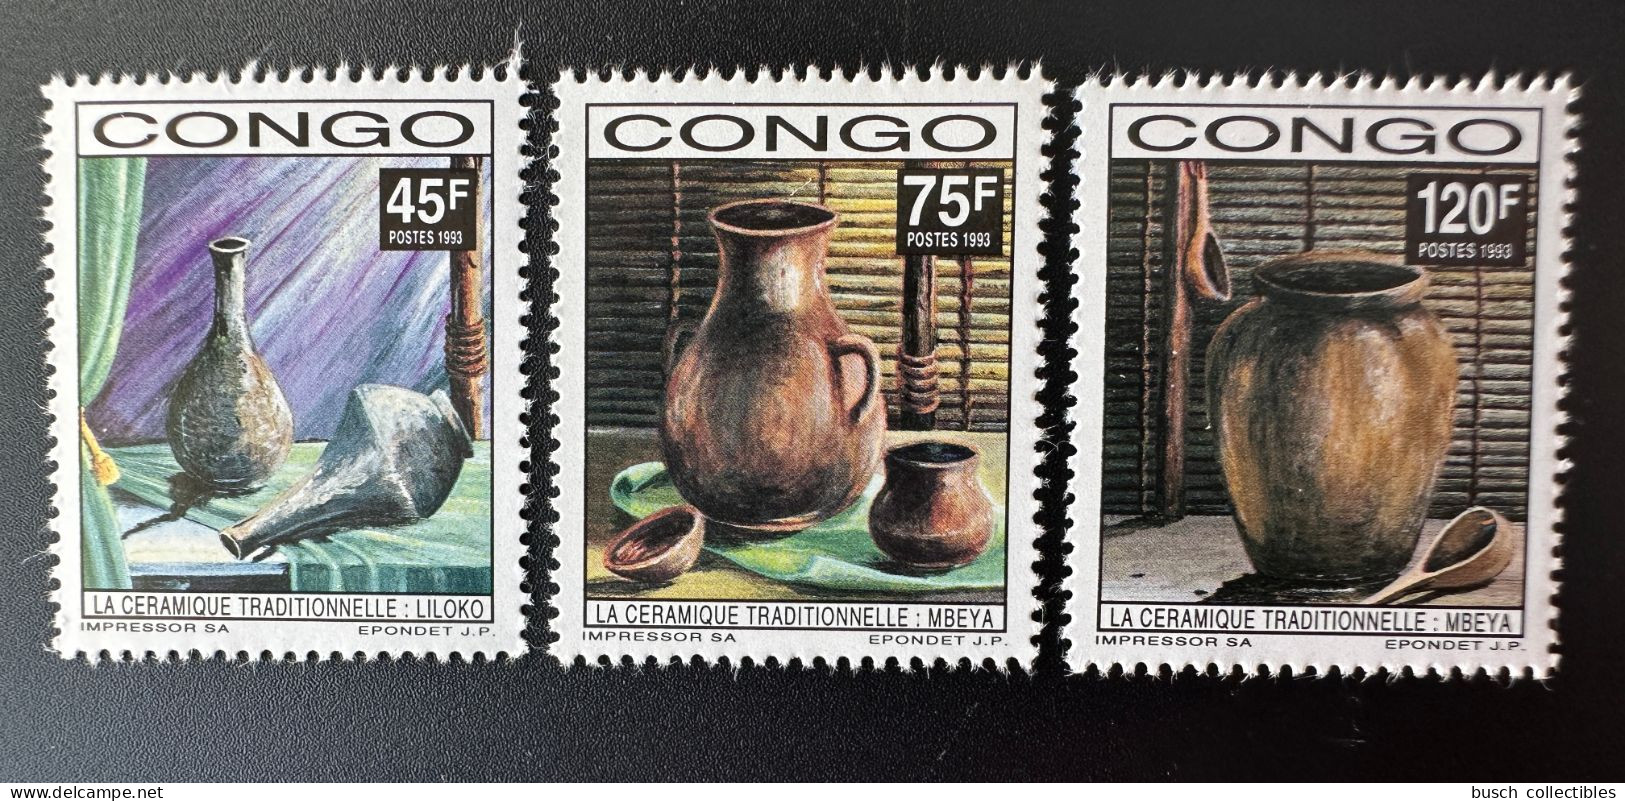 Congo Kongo 1992 / 1993 Mi. 1351 - 1353 Céramique Tradtionnelle Keramik Ceramic - Ungebraucht